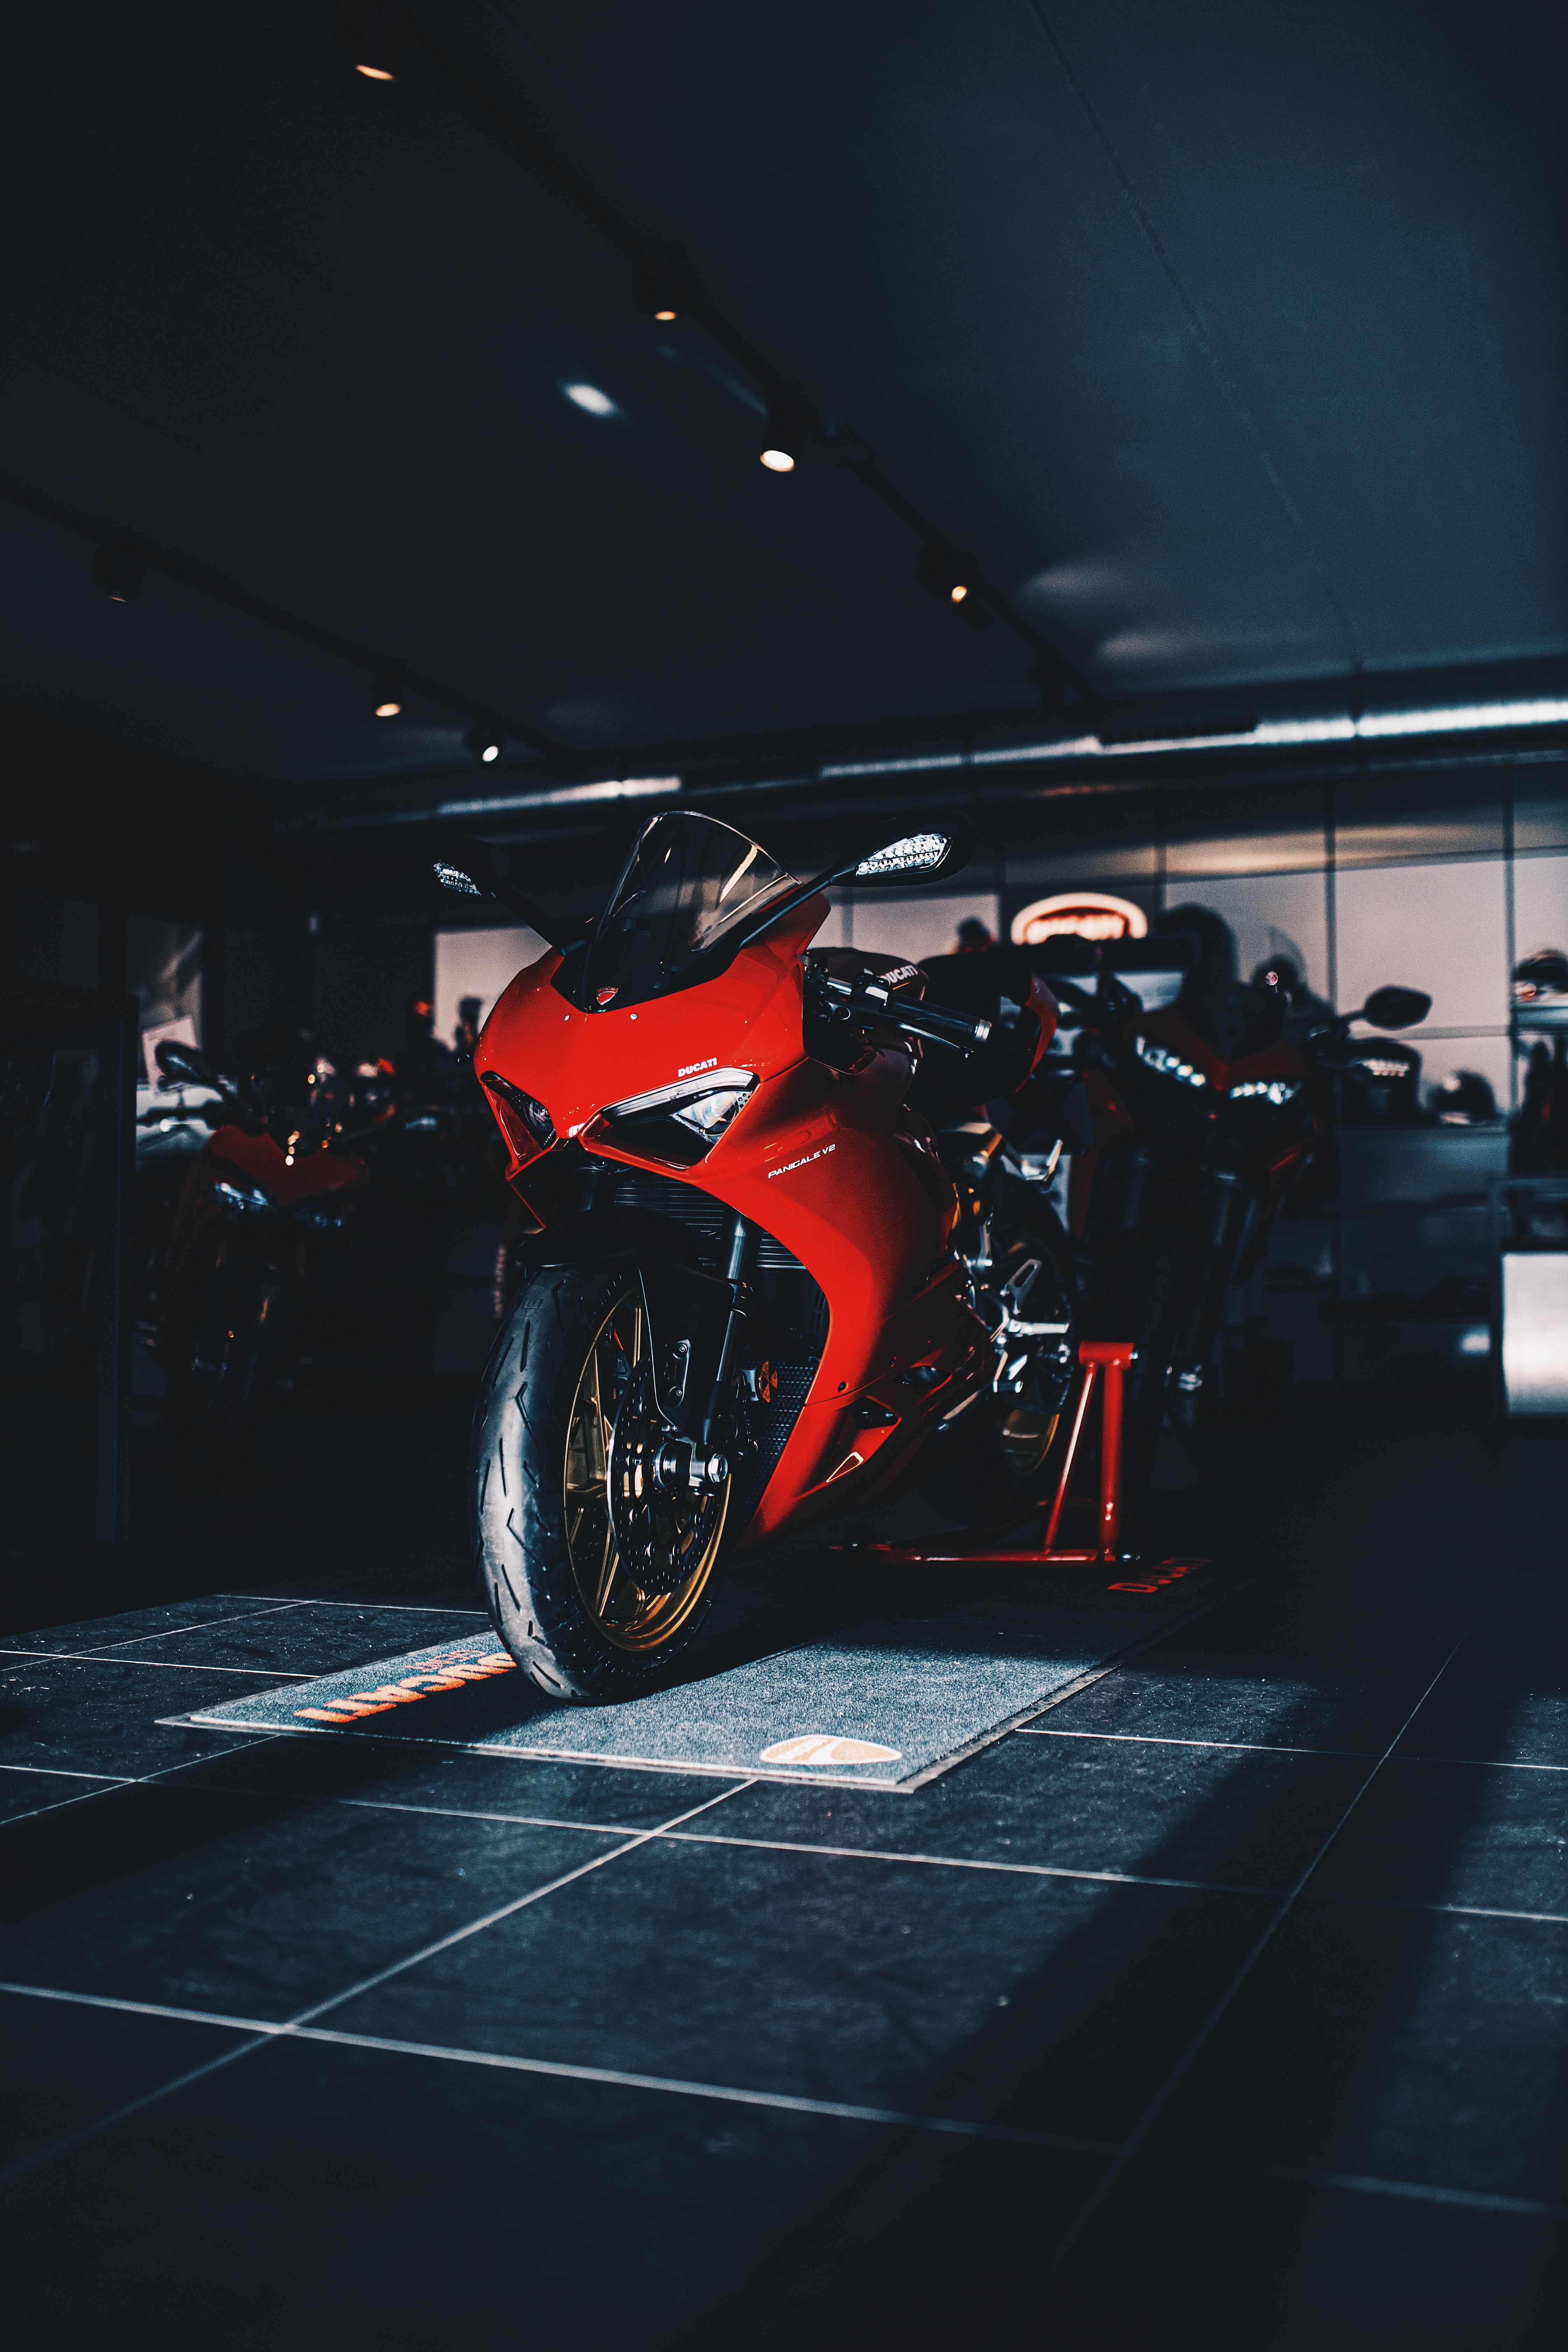 8k Ducati Images